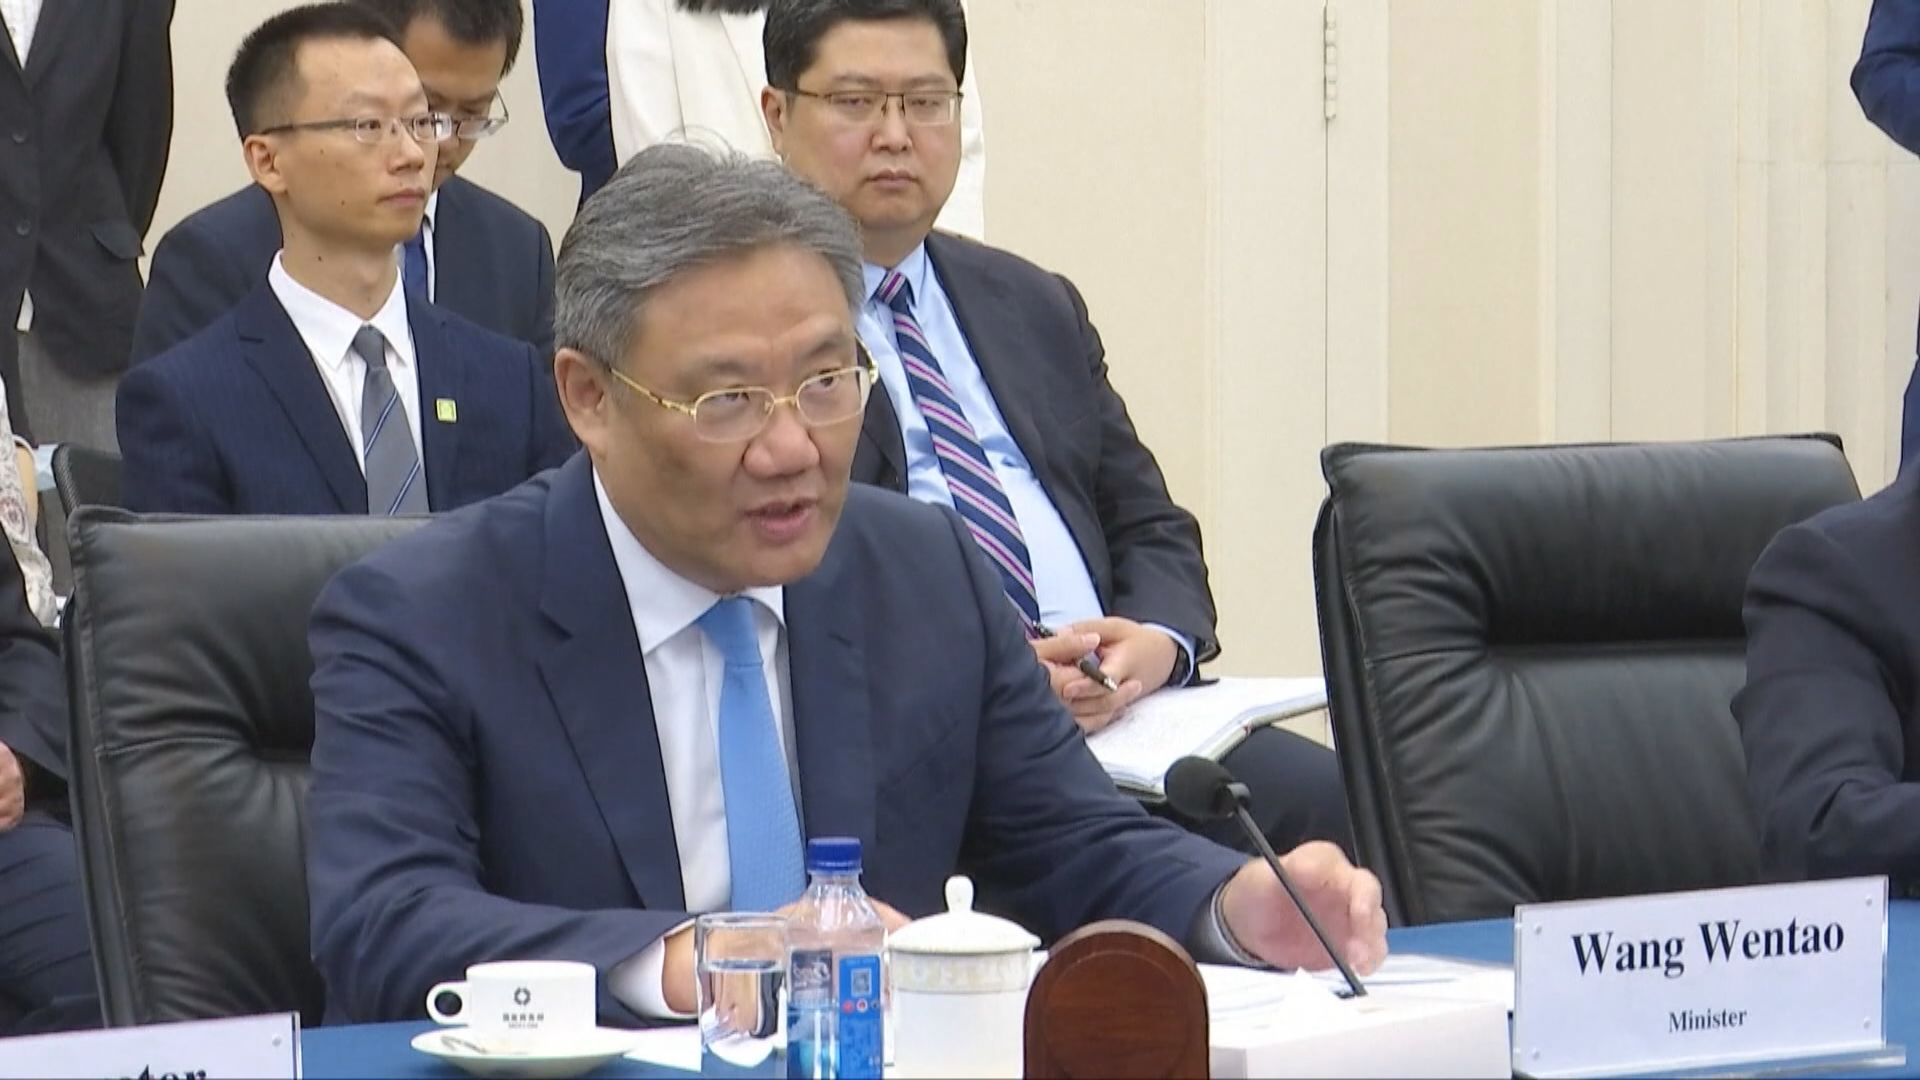 王文濤說將與美國加強對話 為兩國企業提供穩定預期